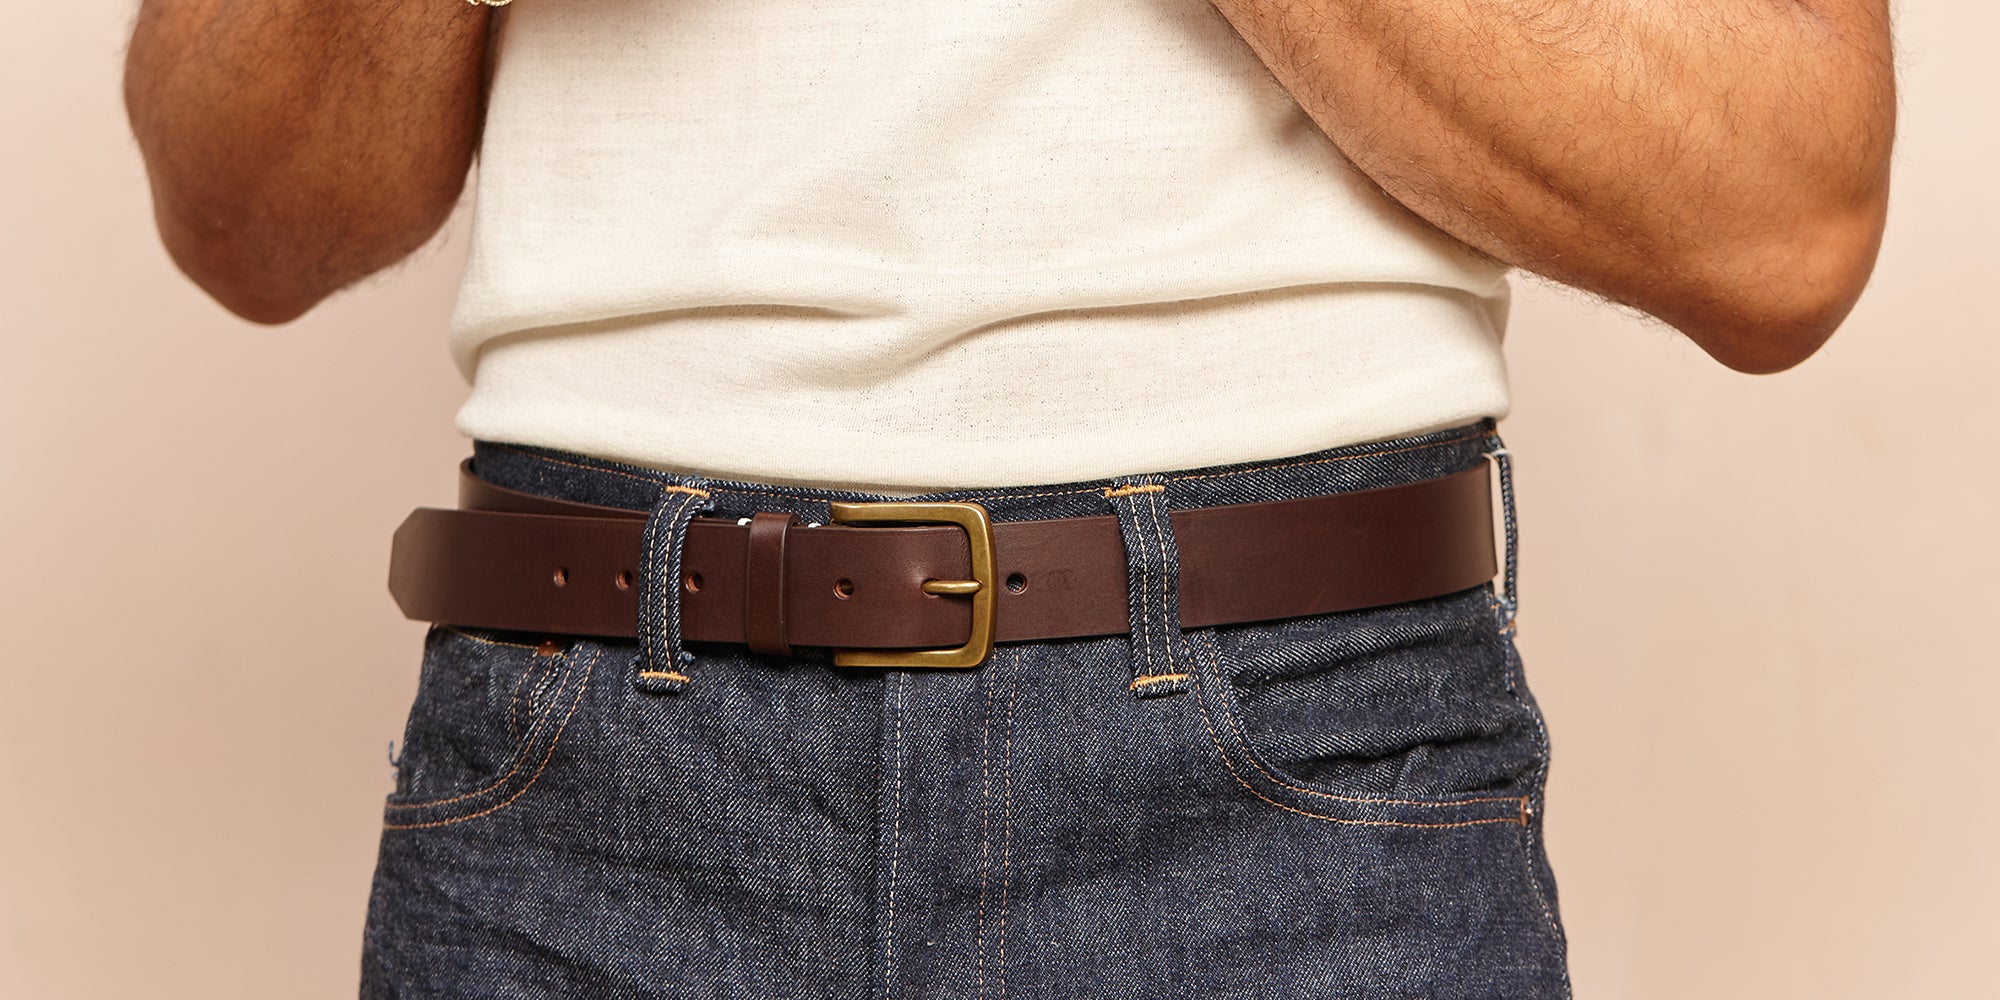 Original Belt - Walnut Leather/Brass - Sir Gordon Bennett - Awliing Belts